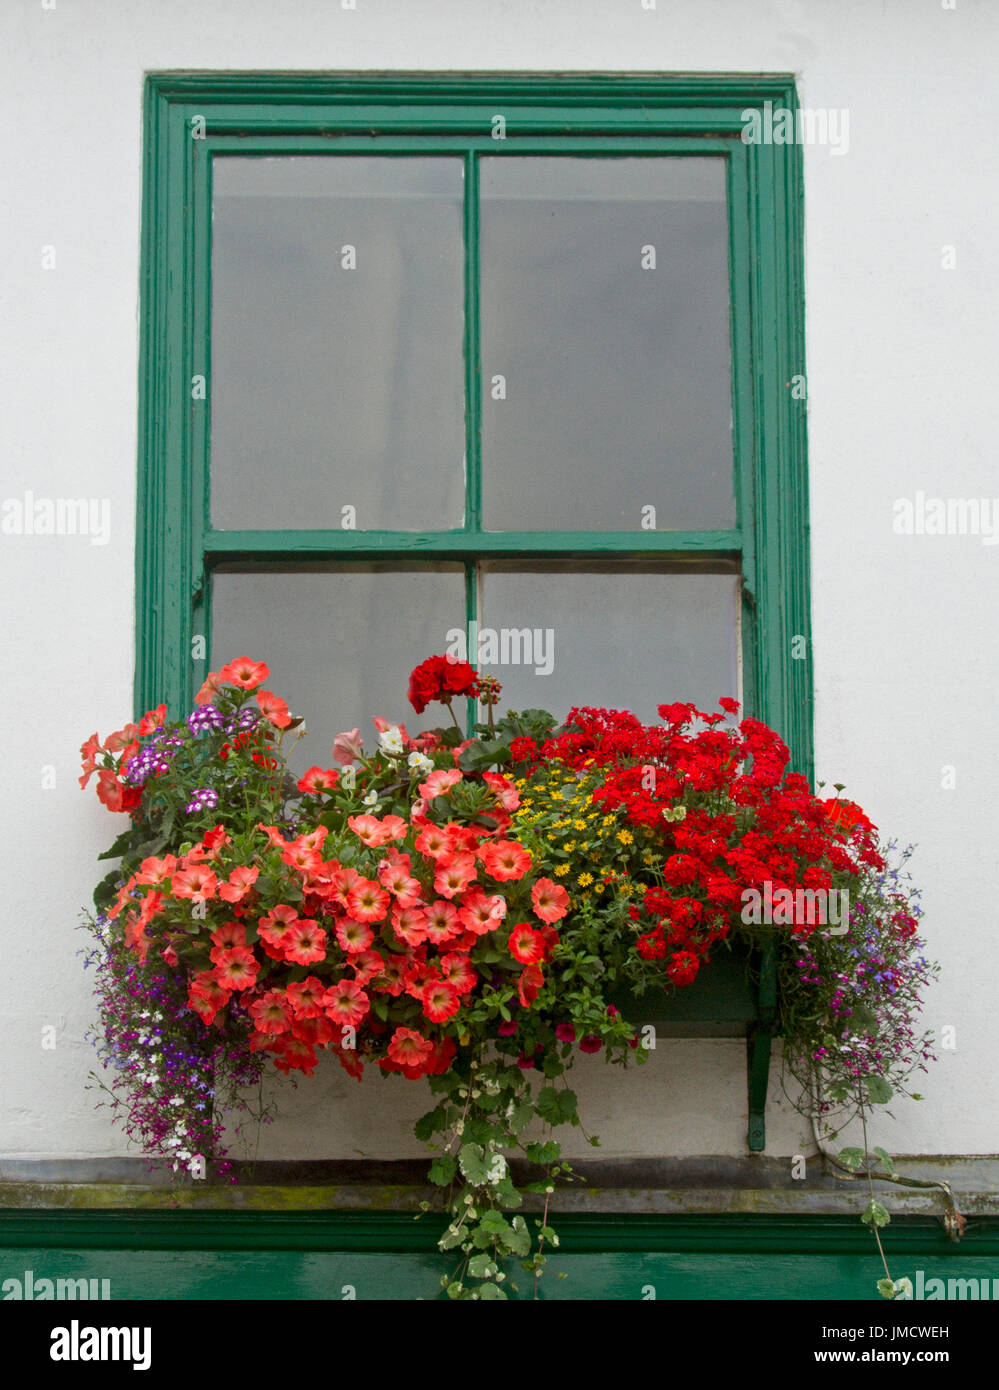 Massa vivaci piante fiorite inc, rosso verbena, orange nelle petunie, giallo margherite, lobelia, e gerani in Window box contro il muro bianco Foto Stock